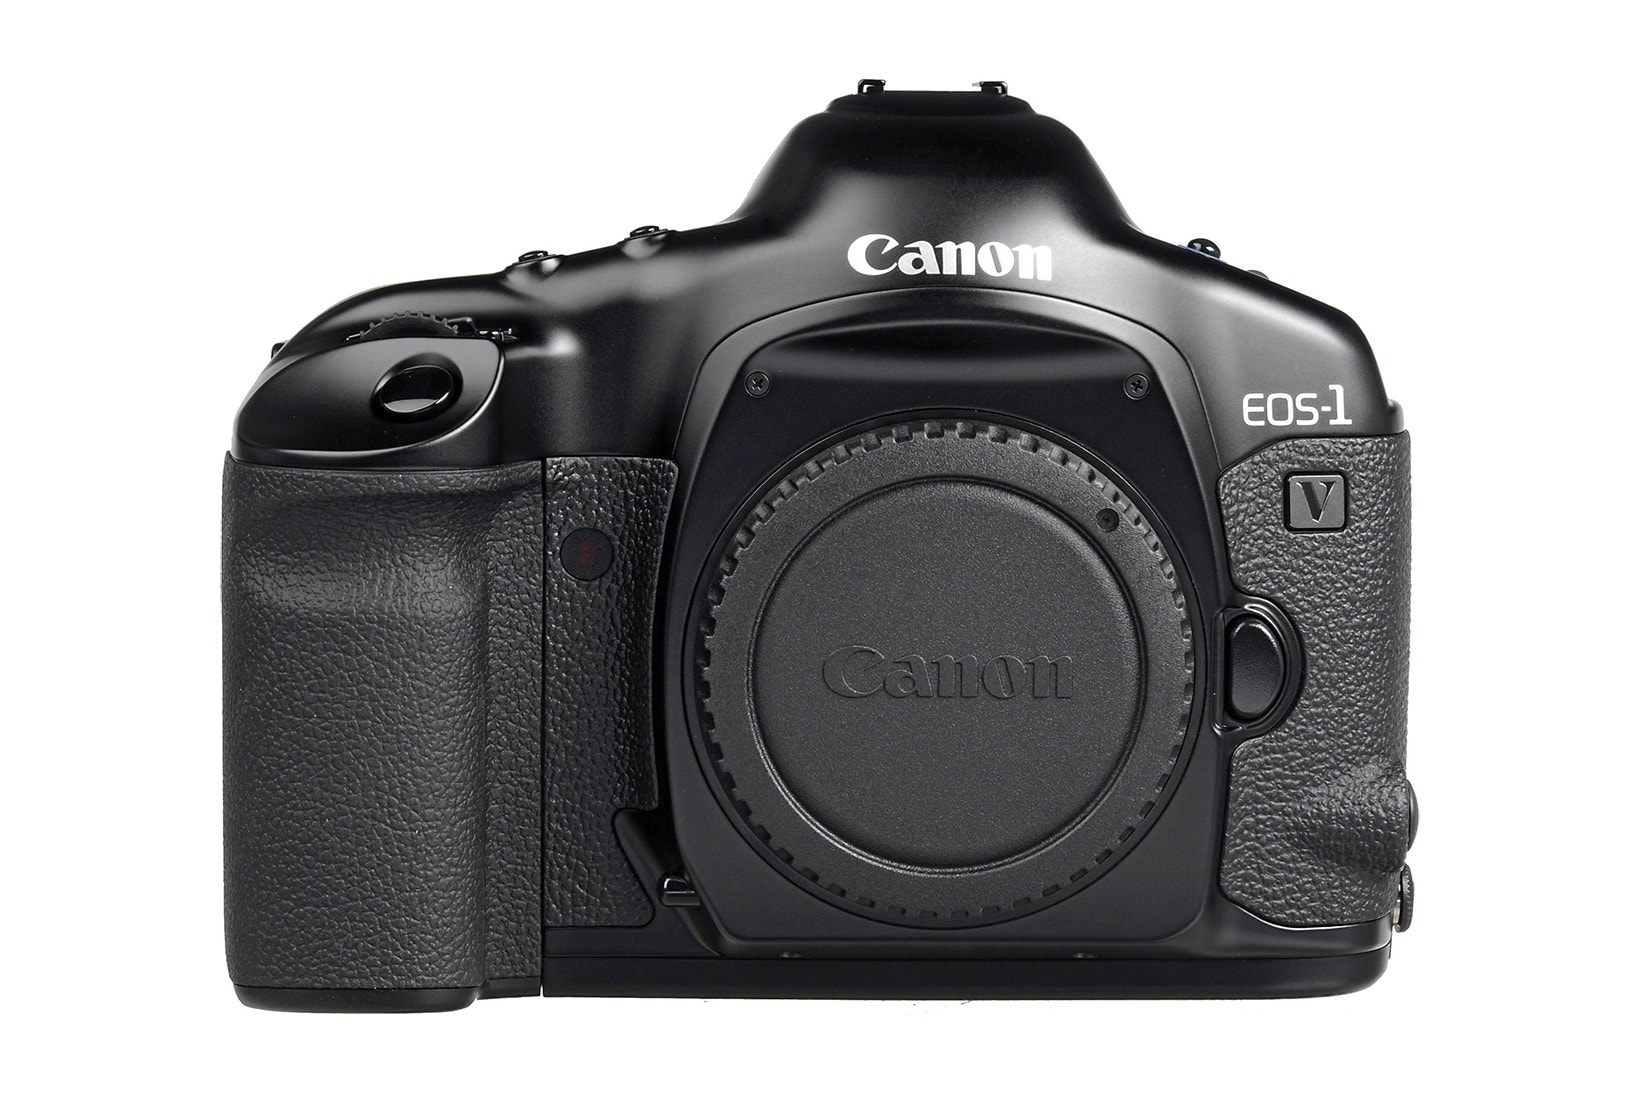 캐논, 필름 카메라 판매 및 생산 중단 2018 canon discontinued final film camera eos-1v